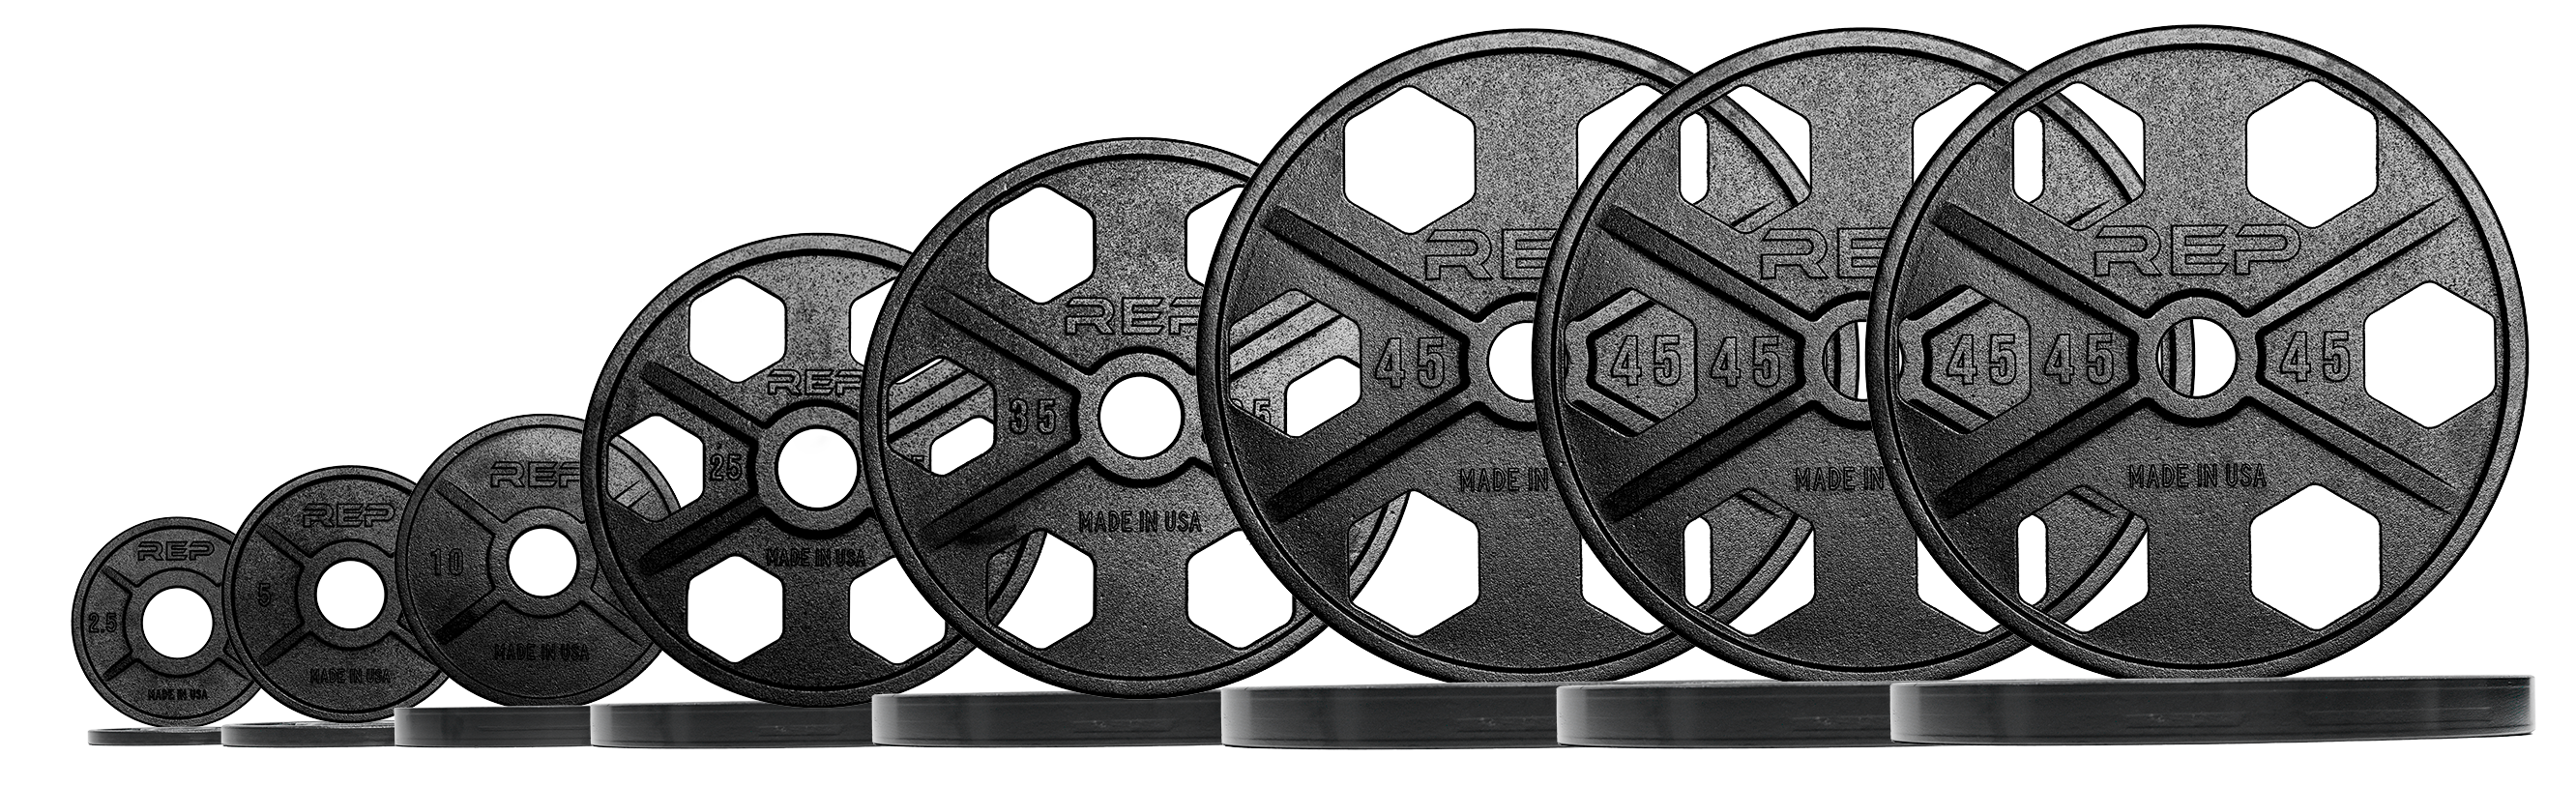 Equalizer™ - Iron Plates USA-Made - 425lb Set